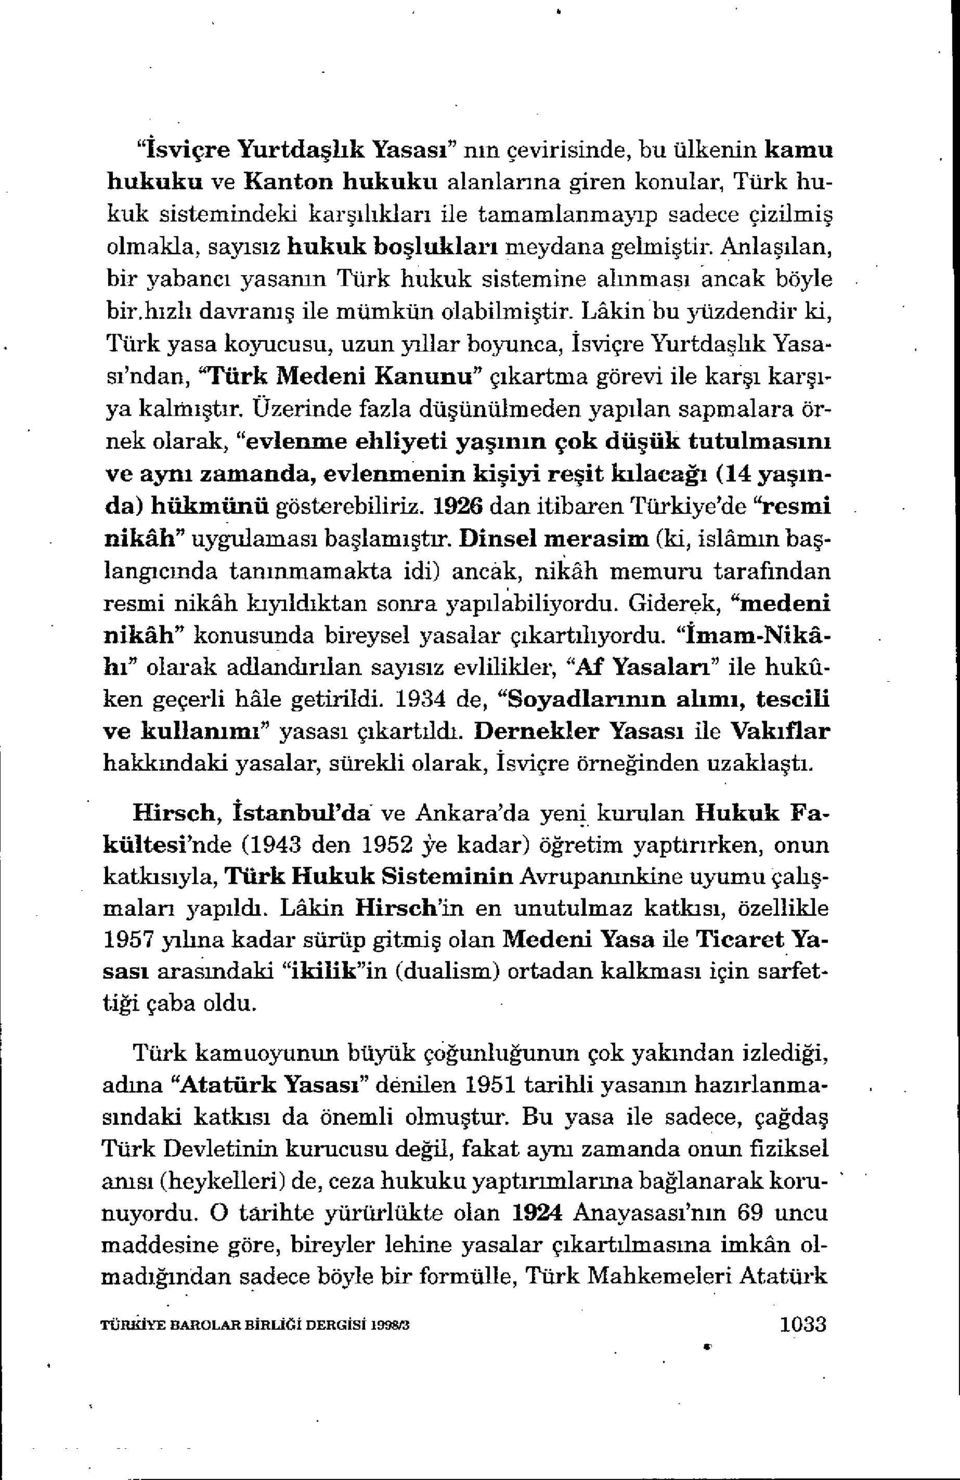 Mkin bu yazdendir ki, Türk yasa koyııcusu, uzun yıllar boyunca, İsviçre Yurtda şhk Yasası'ndan, "Türk Medeni Kanunu" çıkartma görevi ile kar şı karşıya kalımştır.